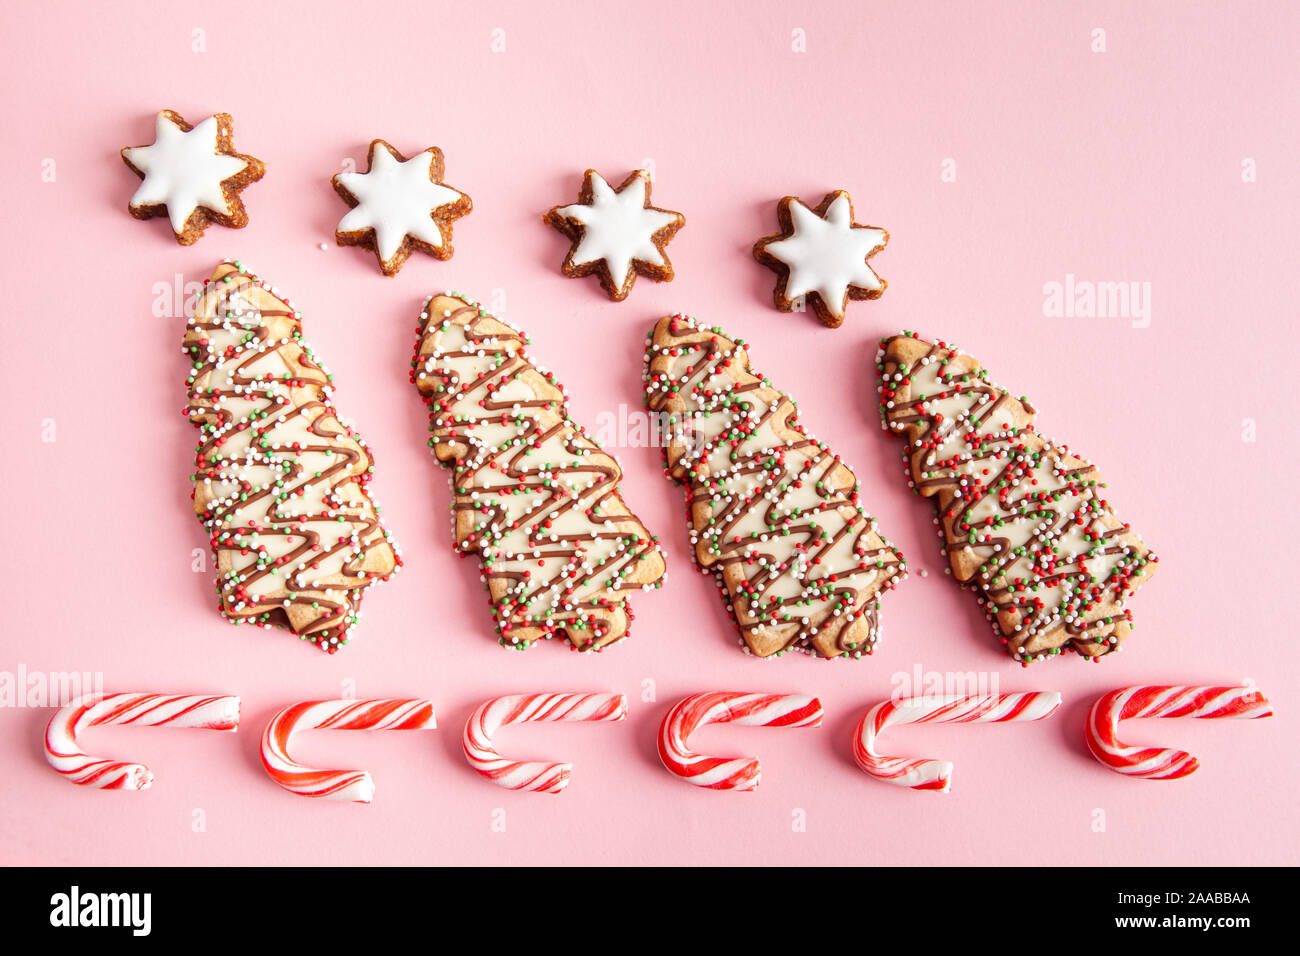 Weihnachten süße Nahrungsmittel - Weihnachtsbaum Kekse mit Zuckerstangen auf rosa Hintergrund angeordnet Stockfoto